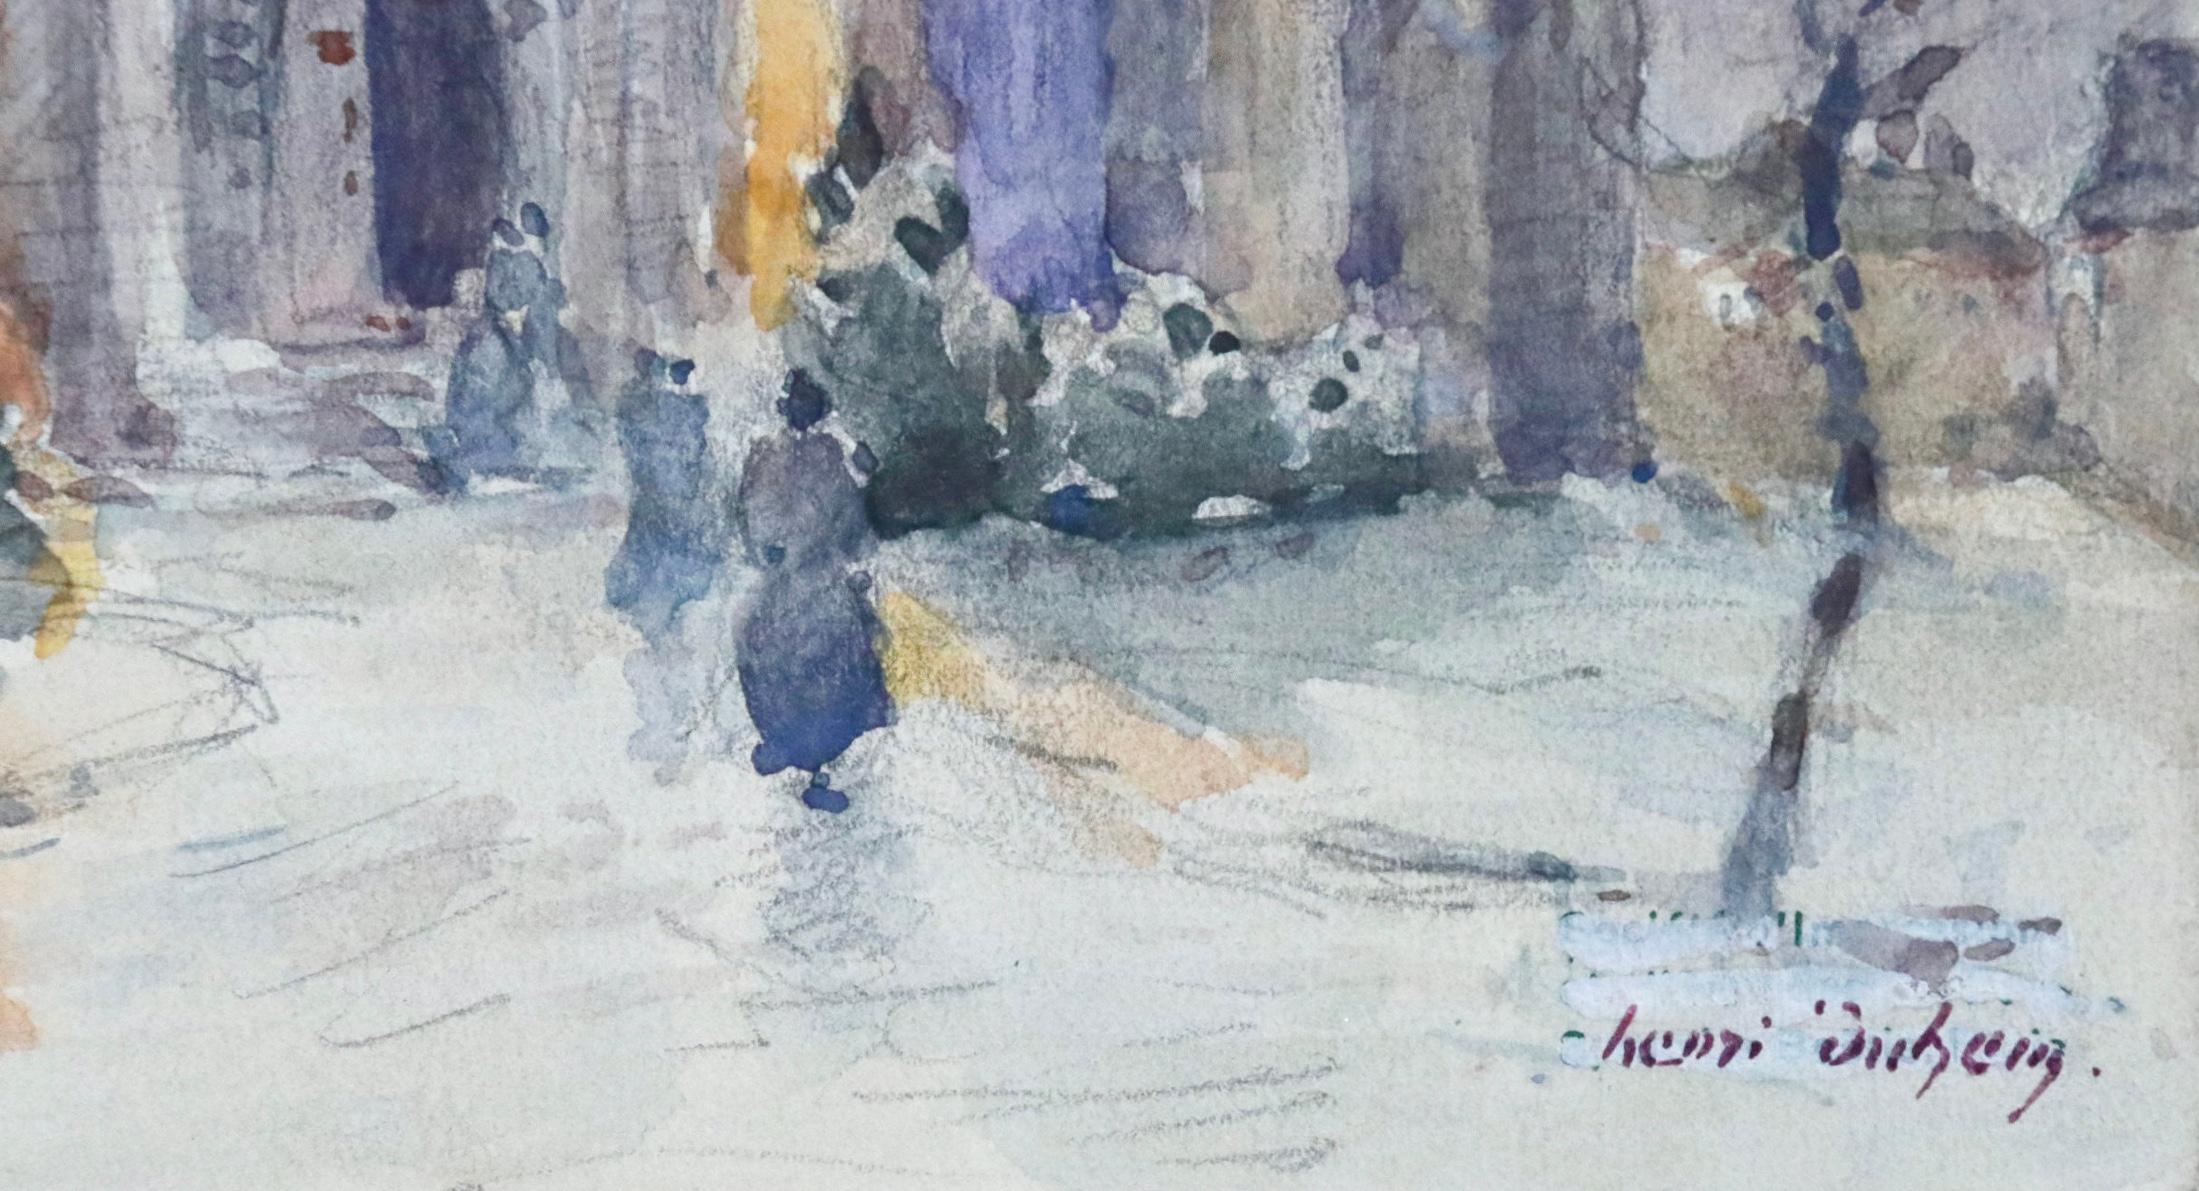 Ein wunderschönes Aquarell auf Papier von Henri Duhem aus der Zeit um 1910, das Figuren zeigt, die an einem kalten Winterabend durch den Schnee gehen, um die Messe in einer Kirche zu besuchen. Gesungen unten rechts. Dieses Gemälde ist derzeit nicht